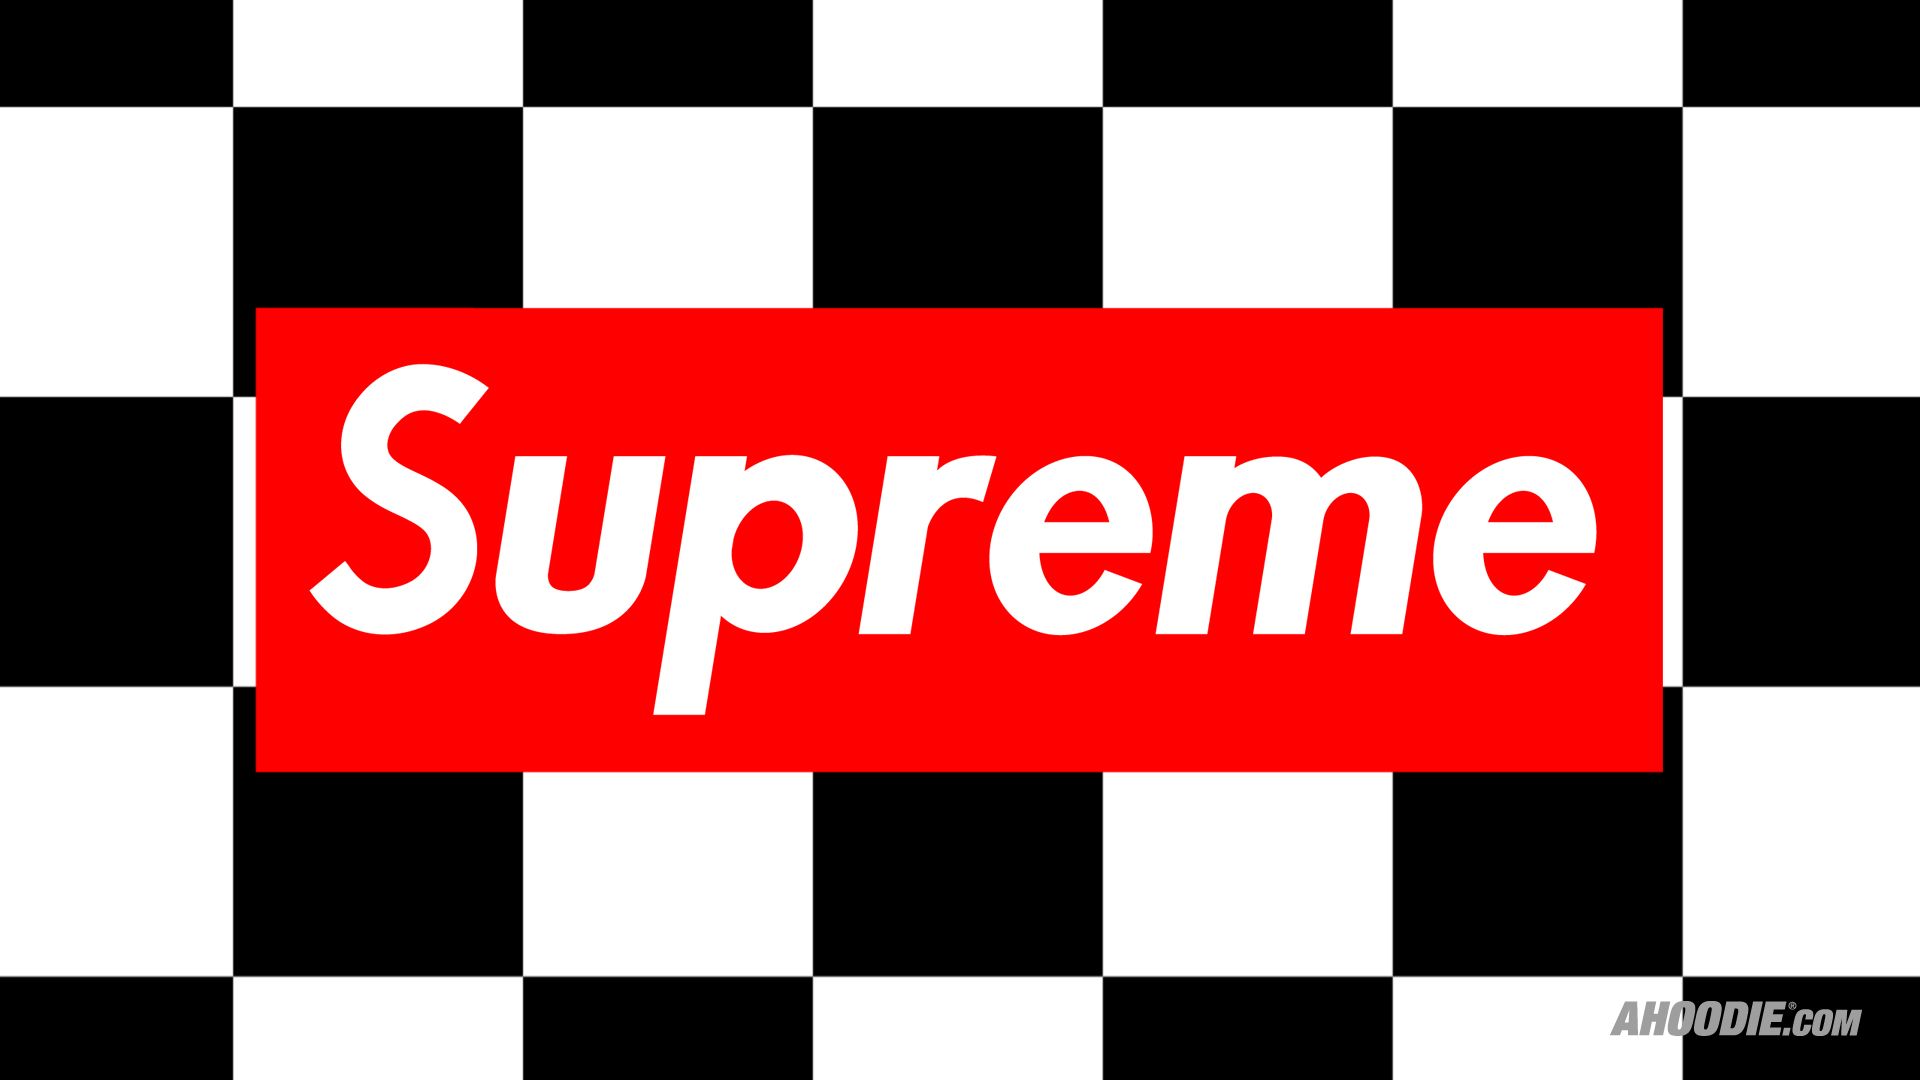 Supreme Box Logo Wallpapers